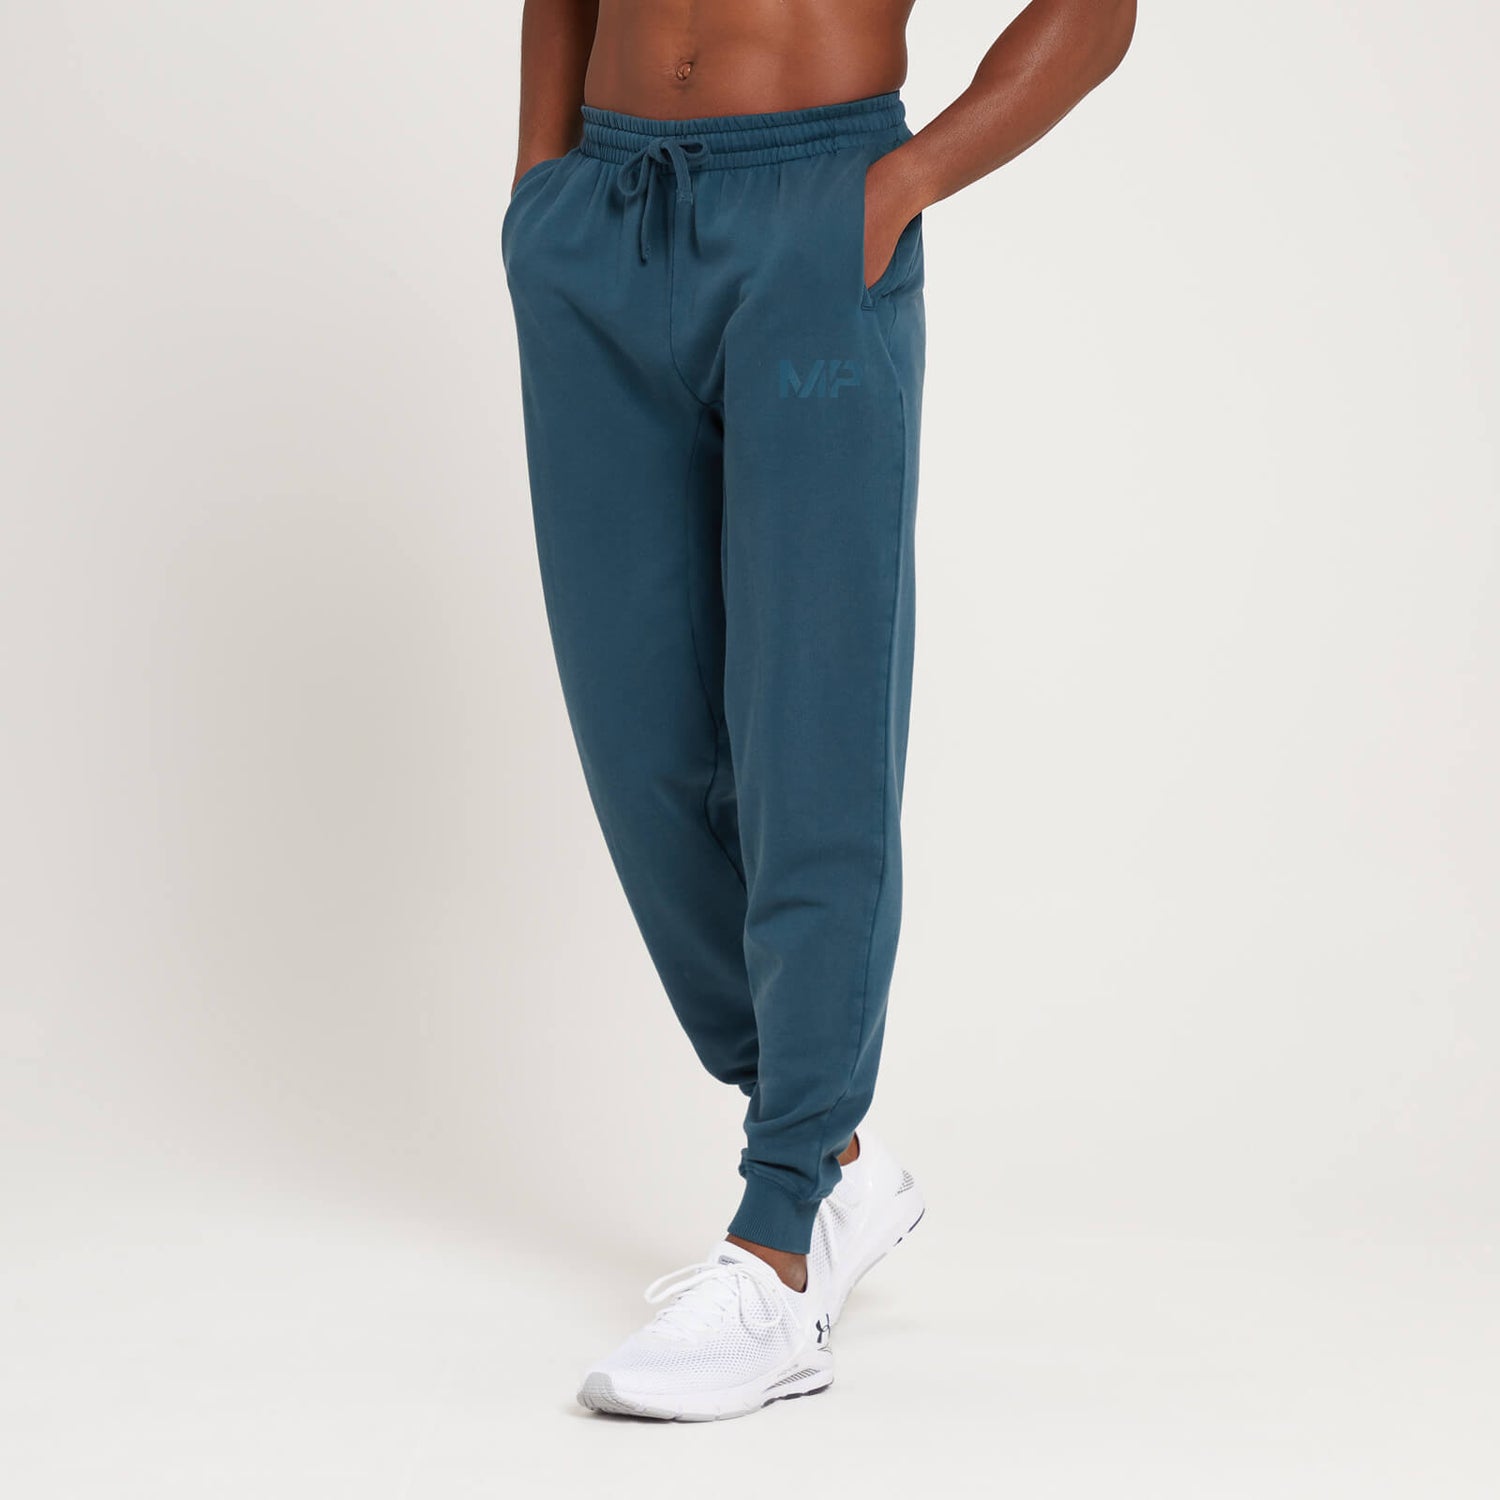 Pantaloni tip jogger prespălați MP Adapt pentru bărbați - Albastru prăfuit - S